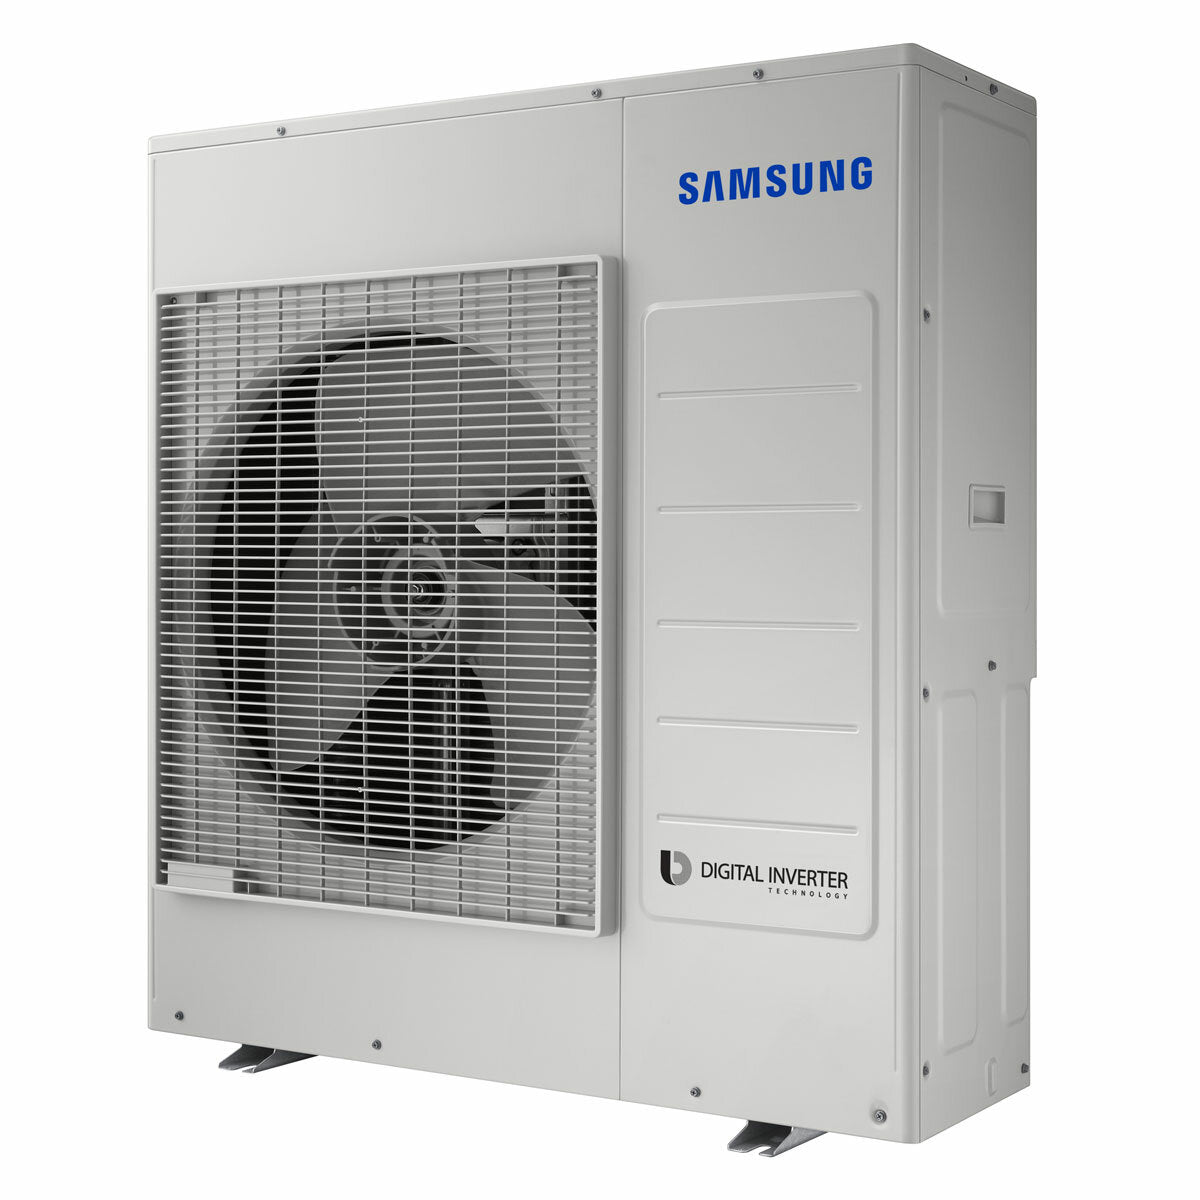 Samsung windfree Klimaanlage Avant Penta Split 7000 + 7000 + 12000 + 12000 + 12000 BTU Inverter A++ WLAN Außengerät 10,0 kW